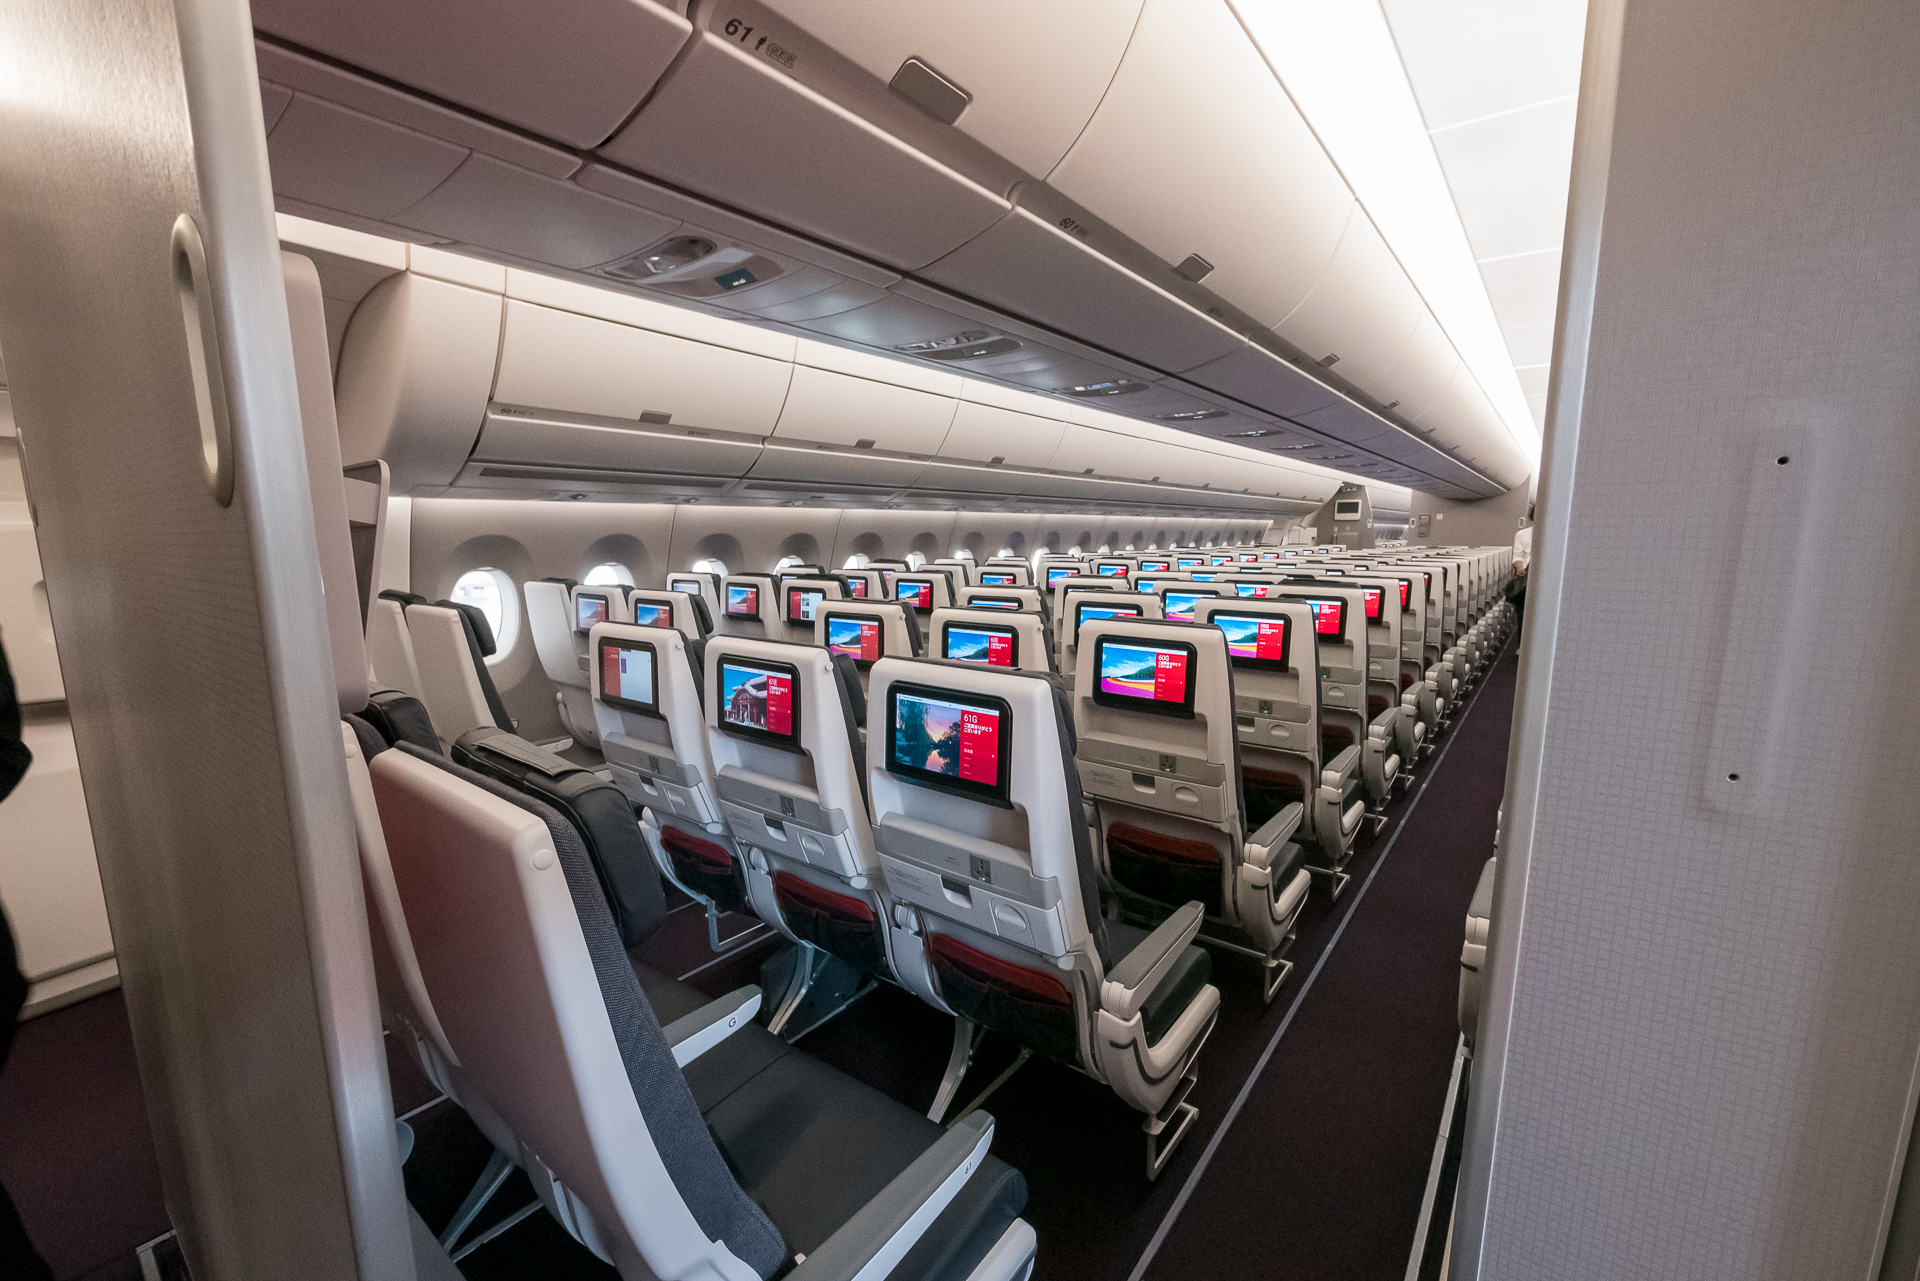 Jalのエアバス A350は座席スペースを最大限に確保するレイアウト 地上走行中も機内インターネットサービスを利用可能 トラベル Watch